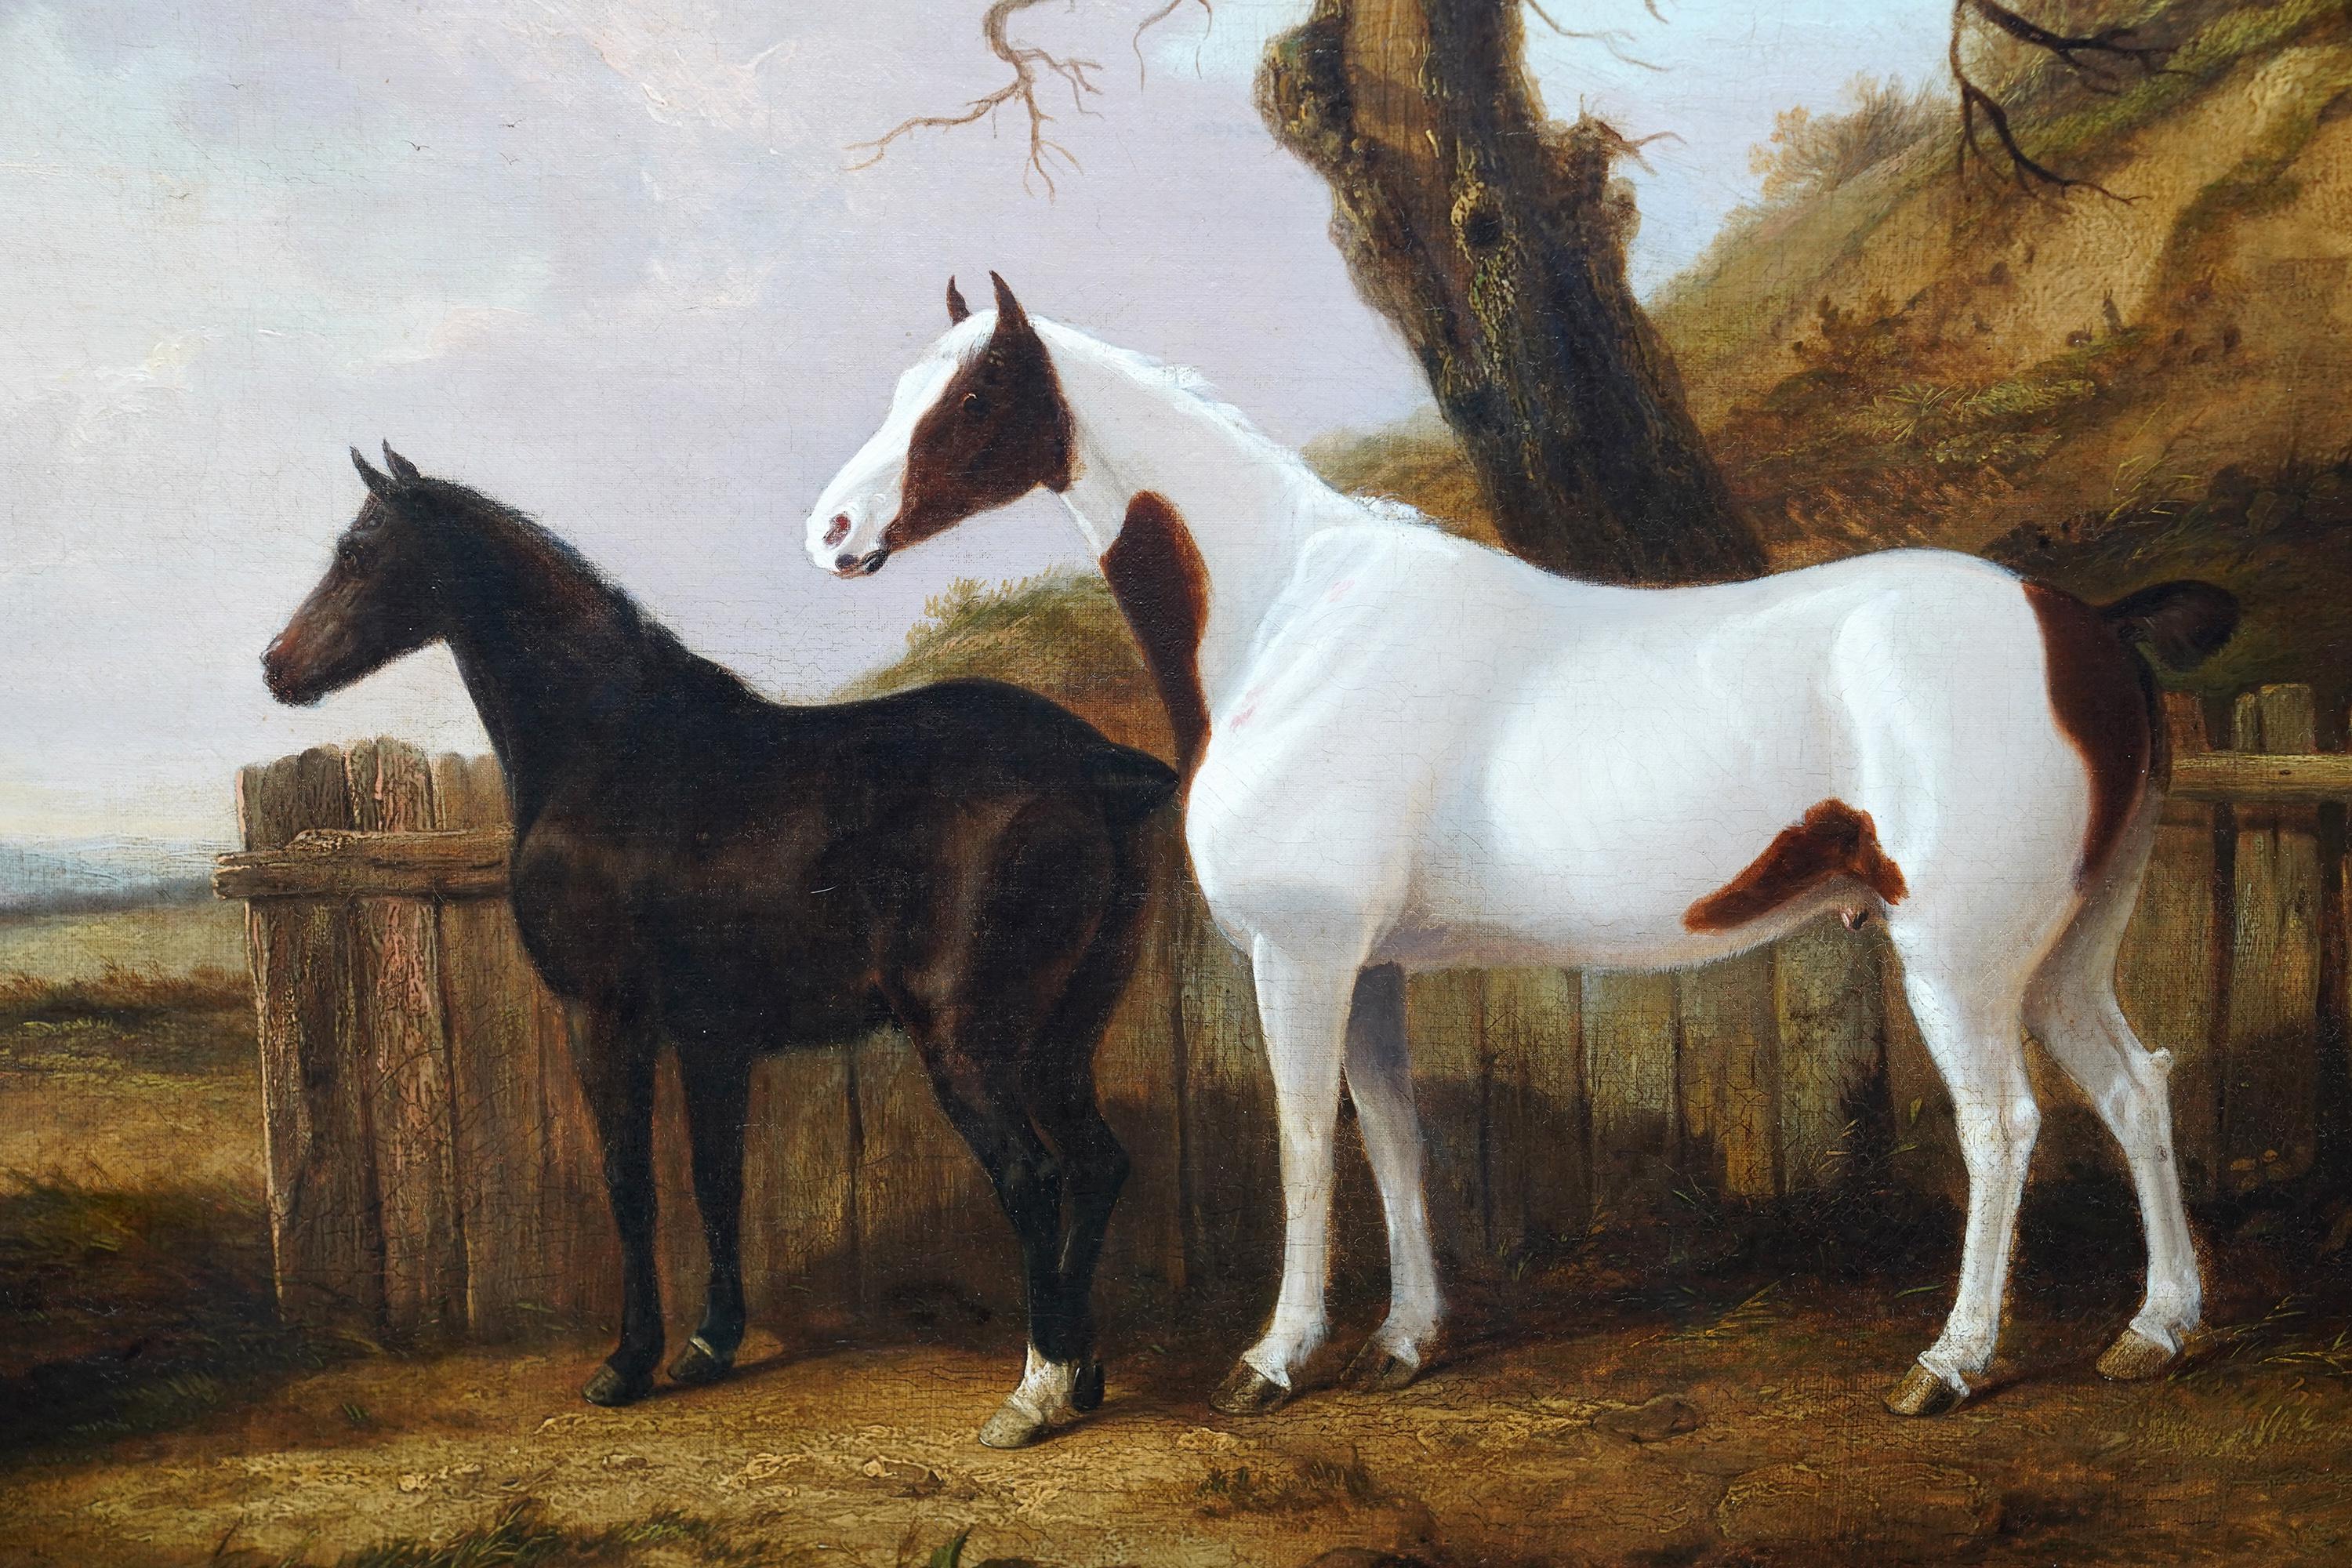 Portrait de deux chevaux dans un paysage - Peinture à l'huile d'art équestre britannique du 19e siècle - Marron Landscape Painting par George Cole